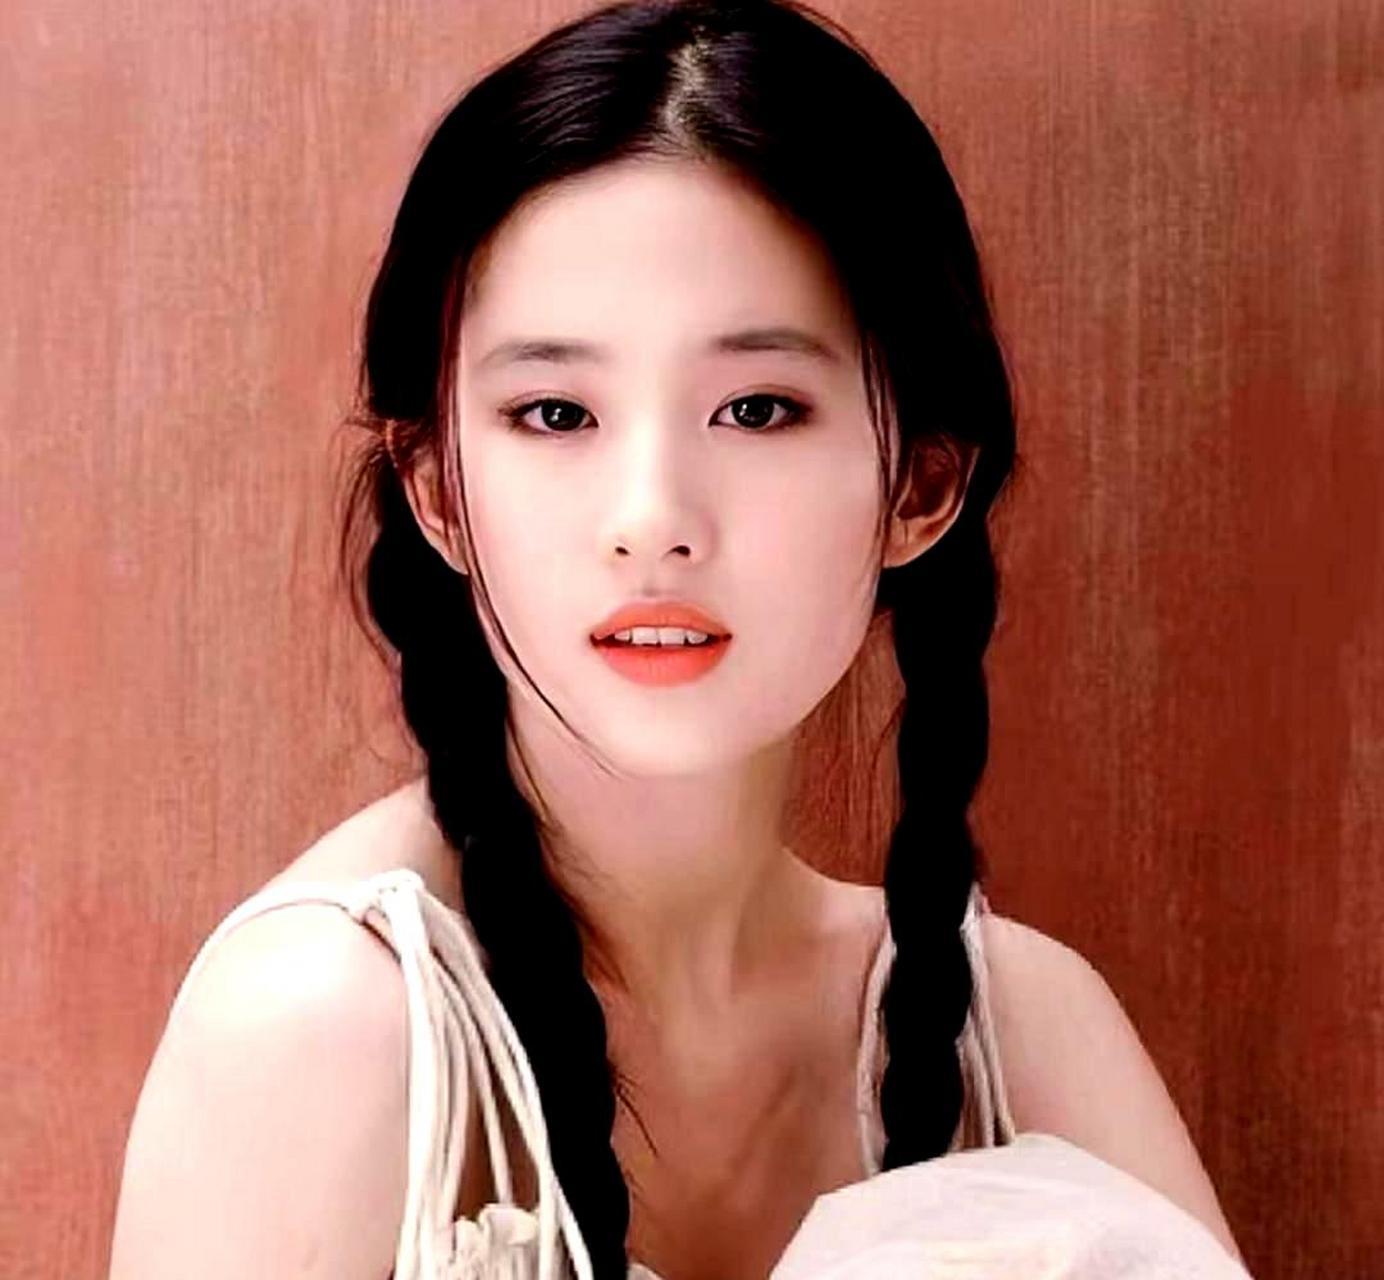 刘亦菲年轻时的美貌令人惊叹,她早期的双辫子清纯写真让人爱不释手